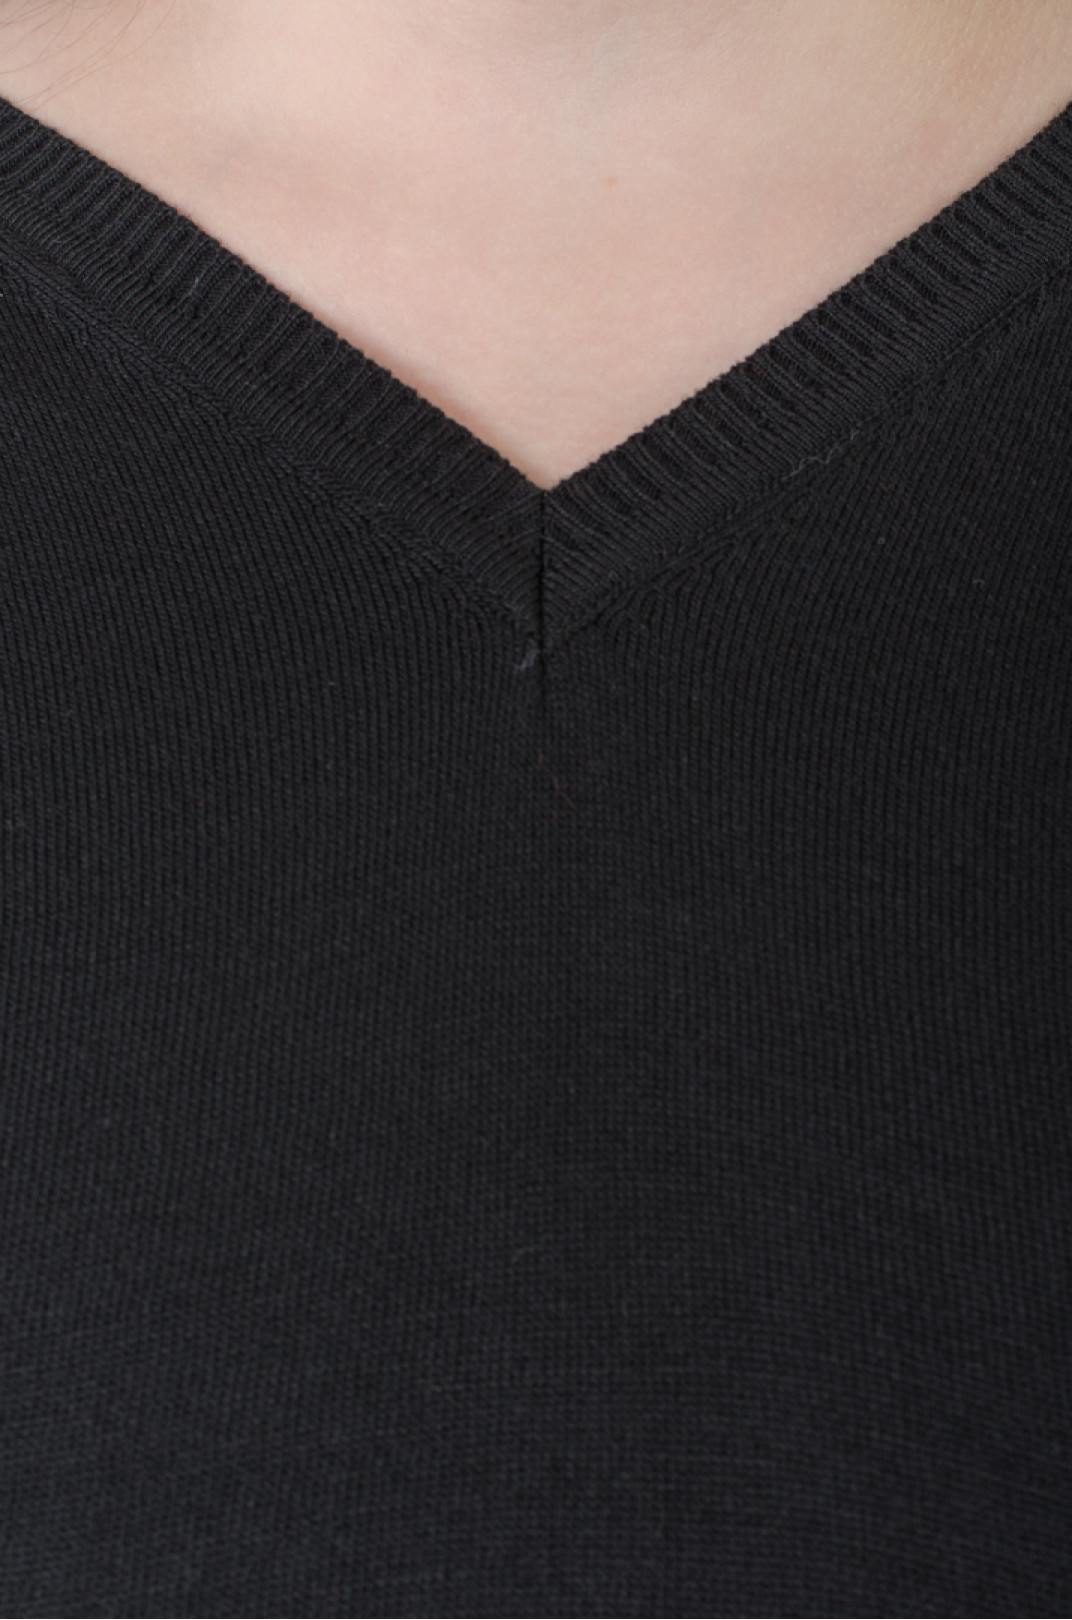 Пуловер в'язаний однотонний з трикутною горловиною батал